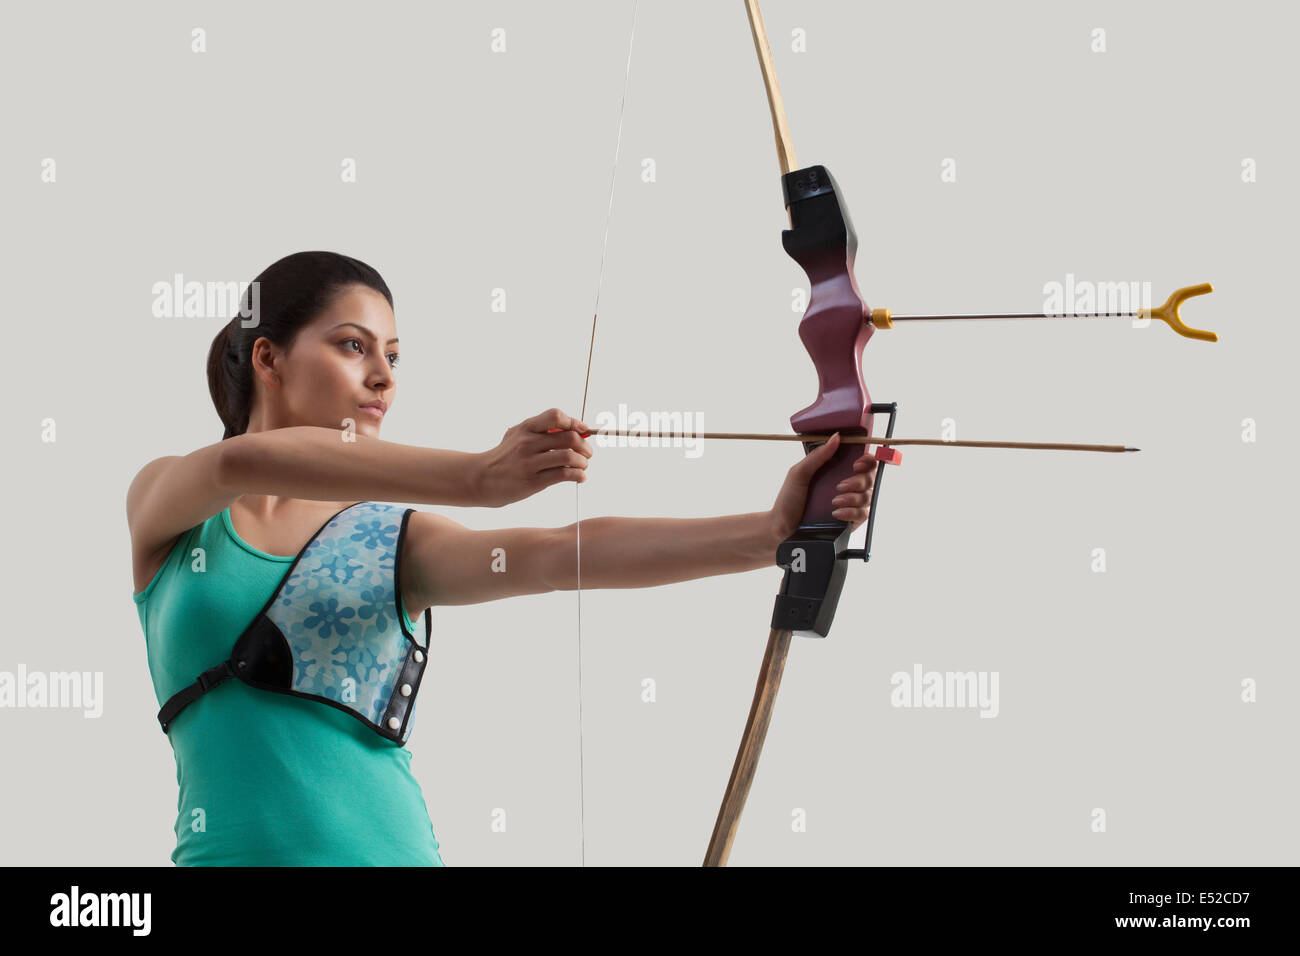 Junge weibliche Bogenschütze mit Pfeil und Bogen gegen grauen Hintergrund Stockfoto